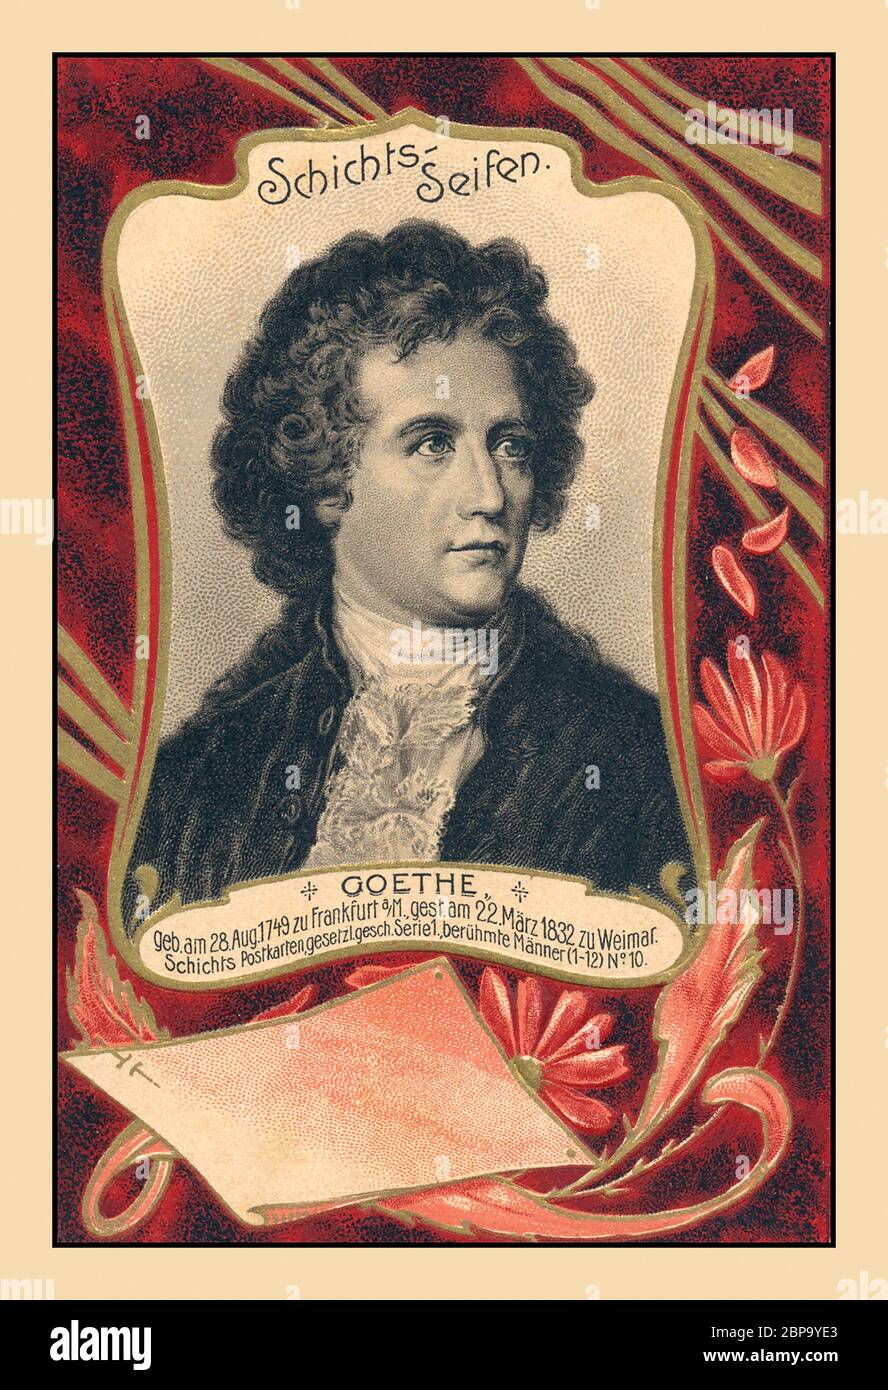 GOETHE Johann Wolfgang von Goethe archivo postal histórica. Escritor y estadista alemán de renombre, considerado la mayor figura literaria alemana de la era moderna. 28 de agosto de 1749 – 22 de marzo de 1832 postal conmemorativa como un homenaje a su variada vida Foto de stock